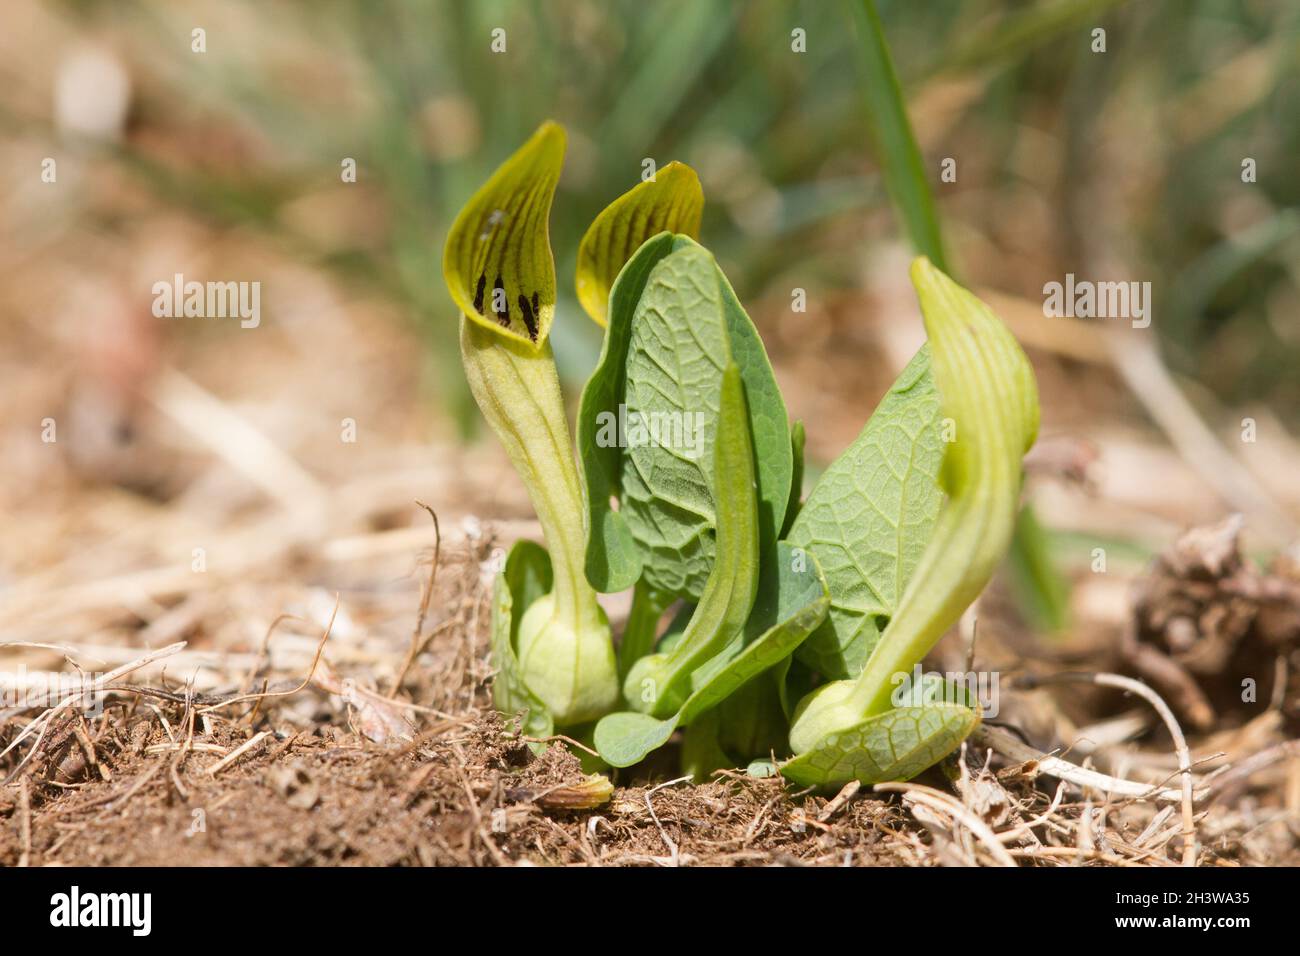 Aristolochia pallida, une espèce méditerranéenne toxique de plante herbacée, plante hôte de Zerynthia polyxena, et papillon européen en danger. Banque D'Images